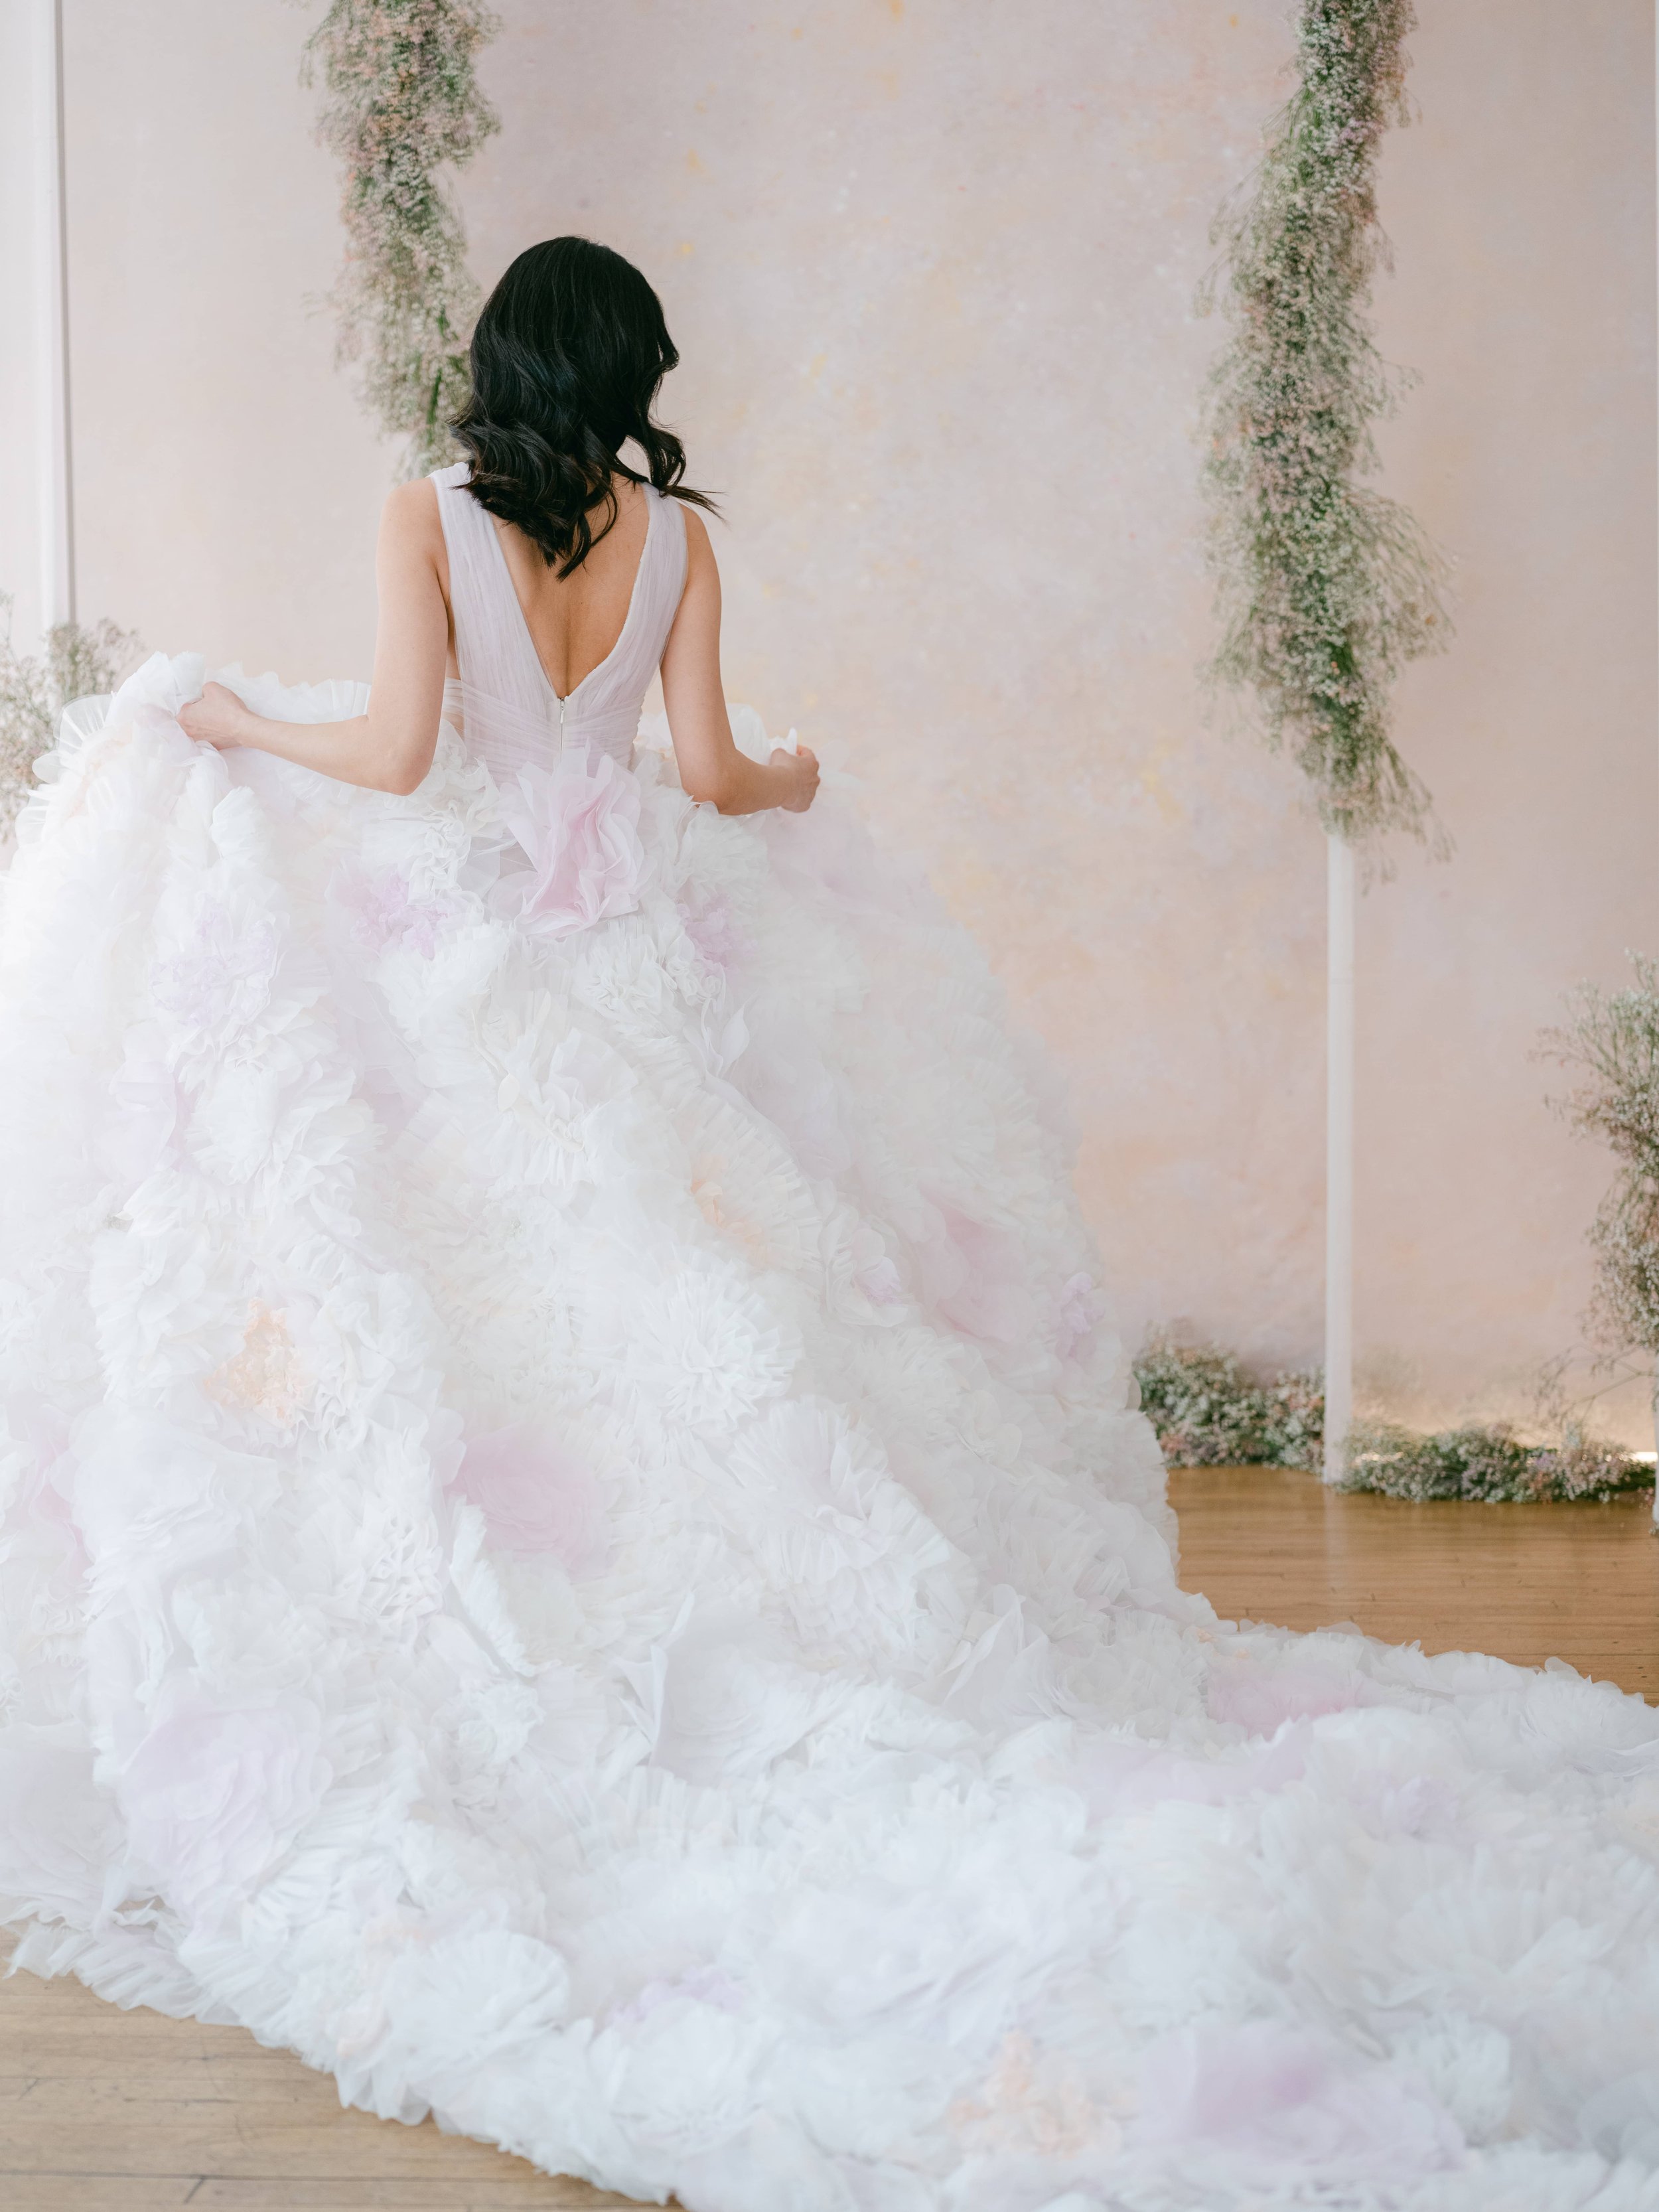 Halter & One Shoulder Informal Wedding Gown Collection - DaVinci Bridal Blog  | DaVinci Bridal Blog